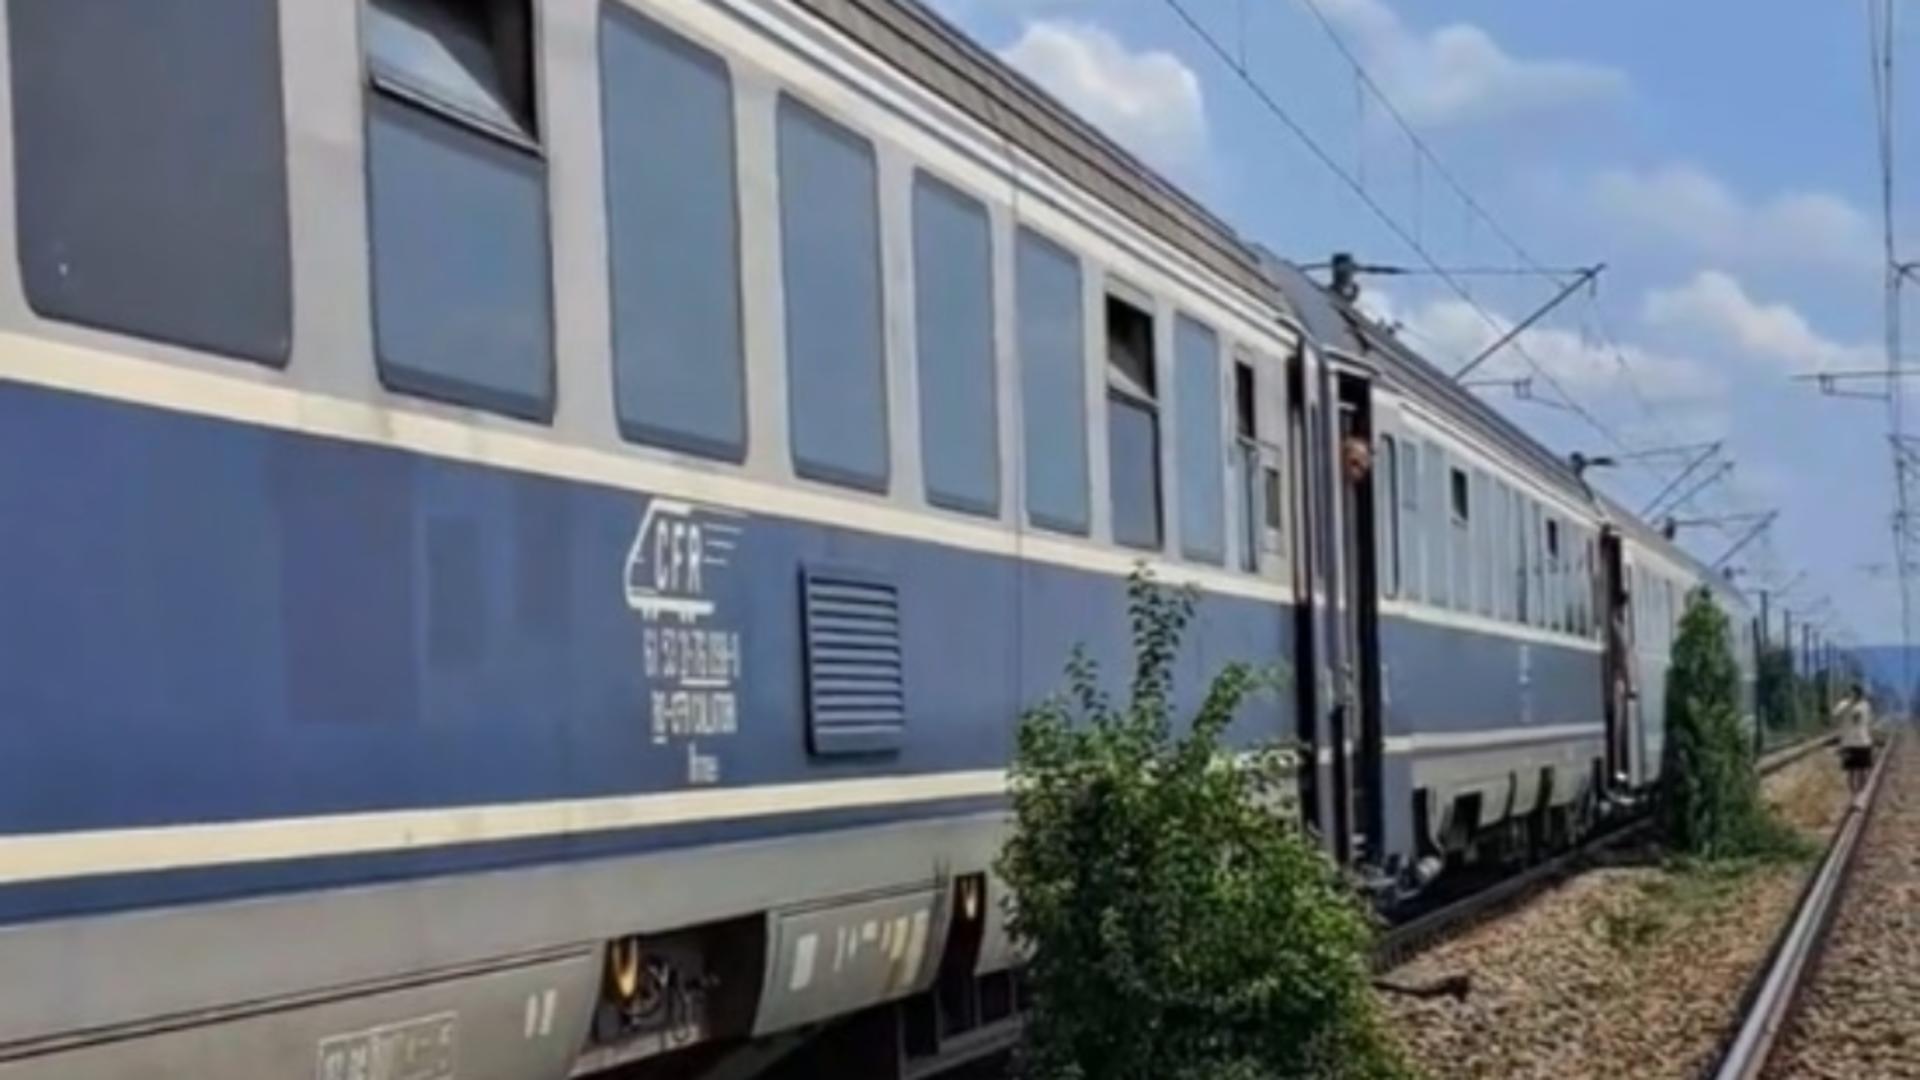 Haos la CFR: Călători lăsați în câmp, la 30 de km de Craiova - Pasagerii au fost scoși din tren și au stat în soare